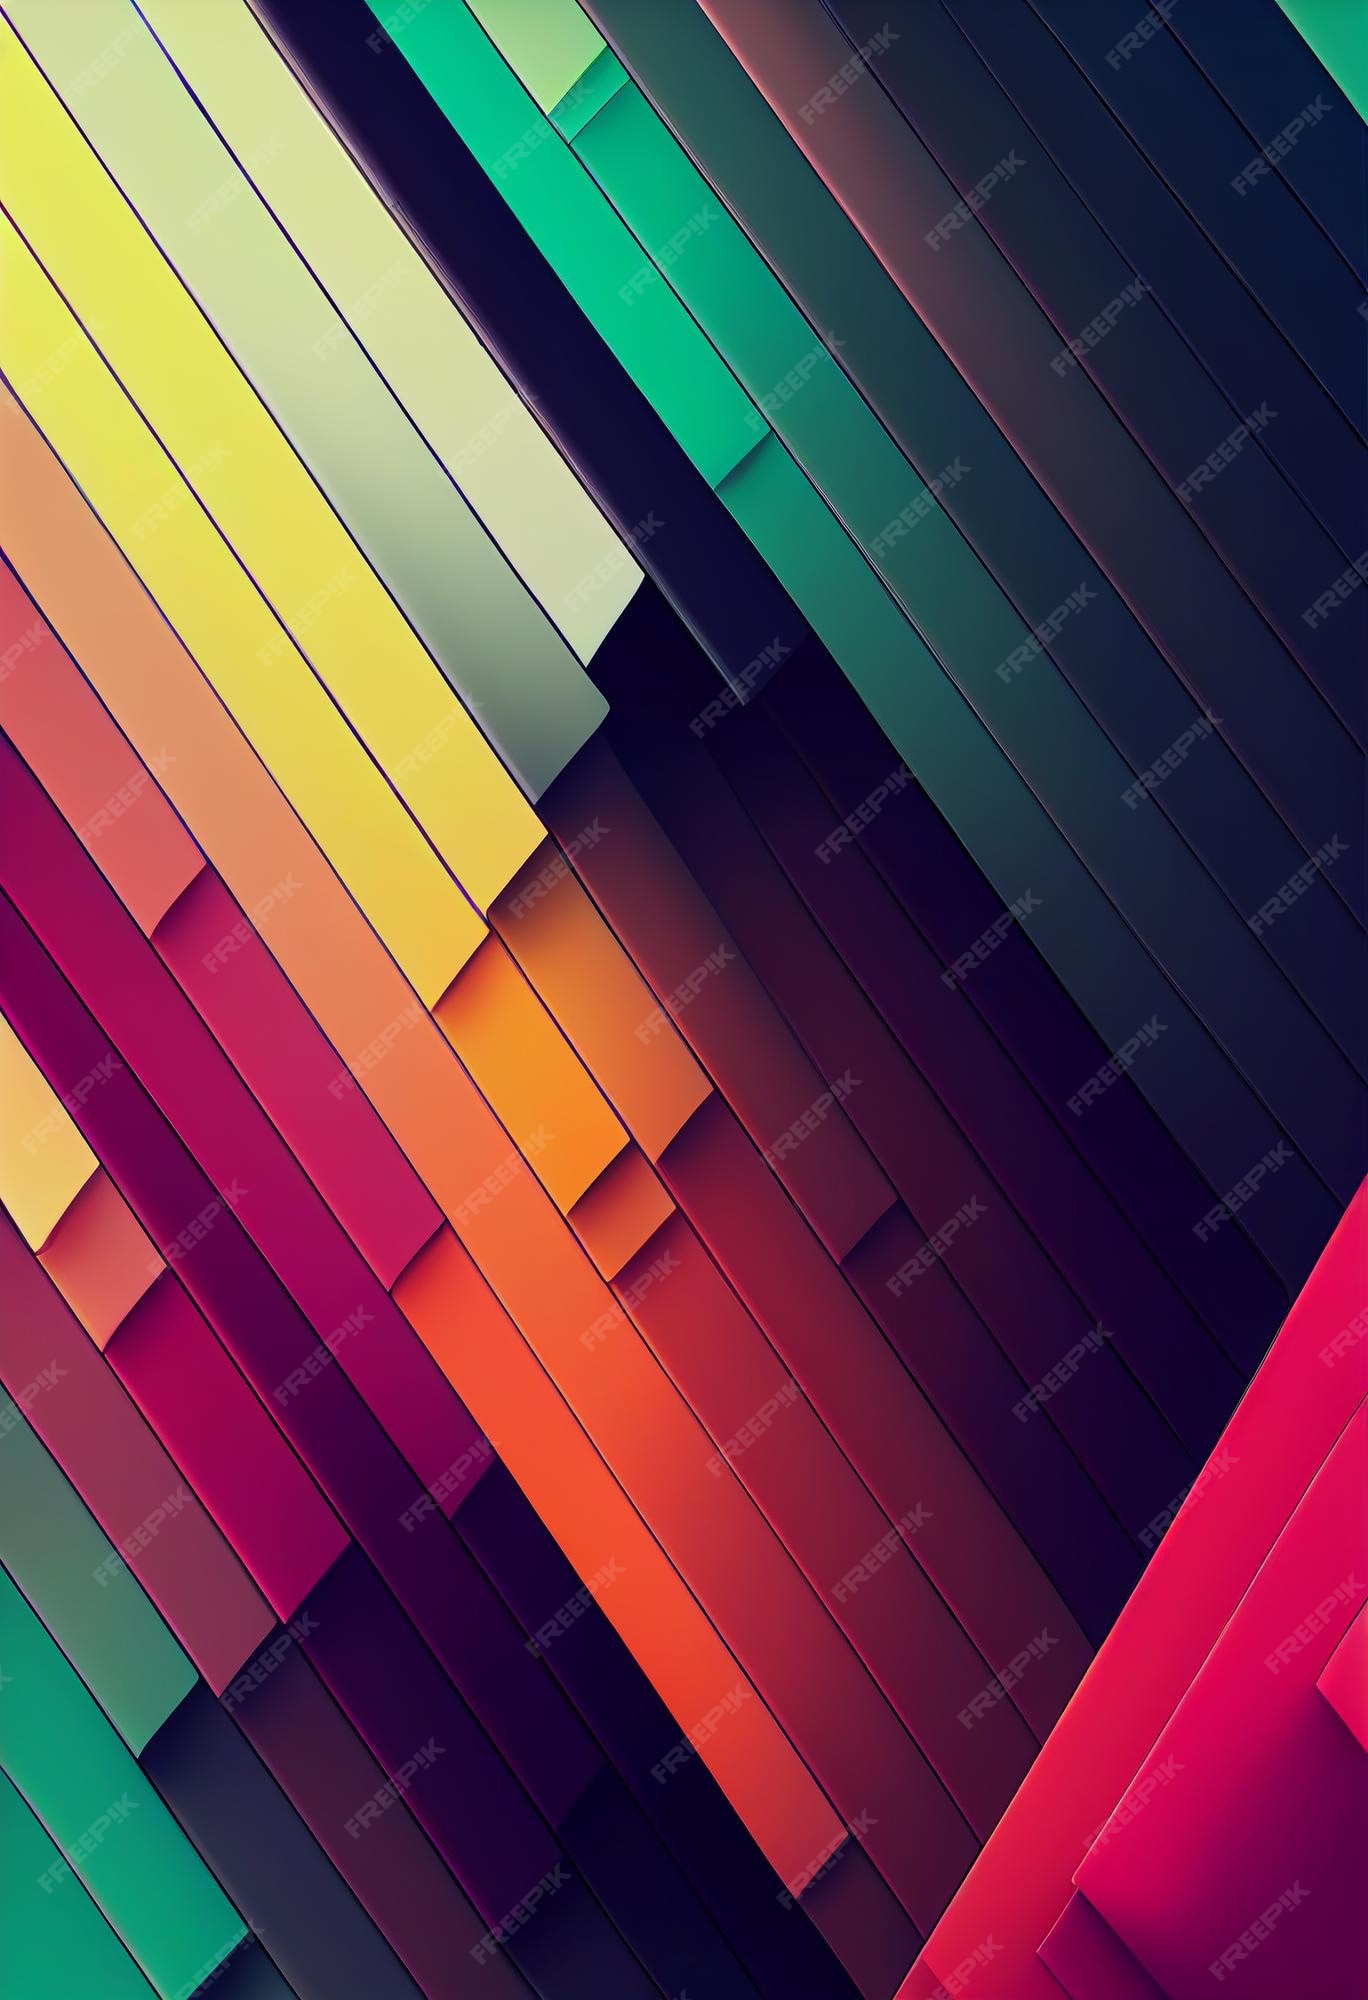 Colorful abstract wallpaper 3d: Hình nền Colorful abstract wallpaper 3d với thiết kế trừu tượng đầy màu sắc sẽ khiến bạn xuýt xoa bất ngờ. Chất liệu 3D độc đáo và tinh tế cùng với sắc màu sống động tạo nên một bức tranh tuyệt đẹp trên màn hình máy tính của bạn. Hãy khám phá và tận hưởng cảm giác đầy mới mẻ với Colorful abstract wallpaper 3d ngay hôm nay!